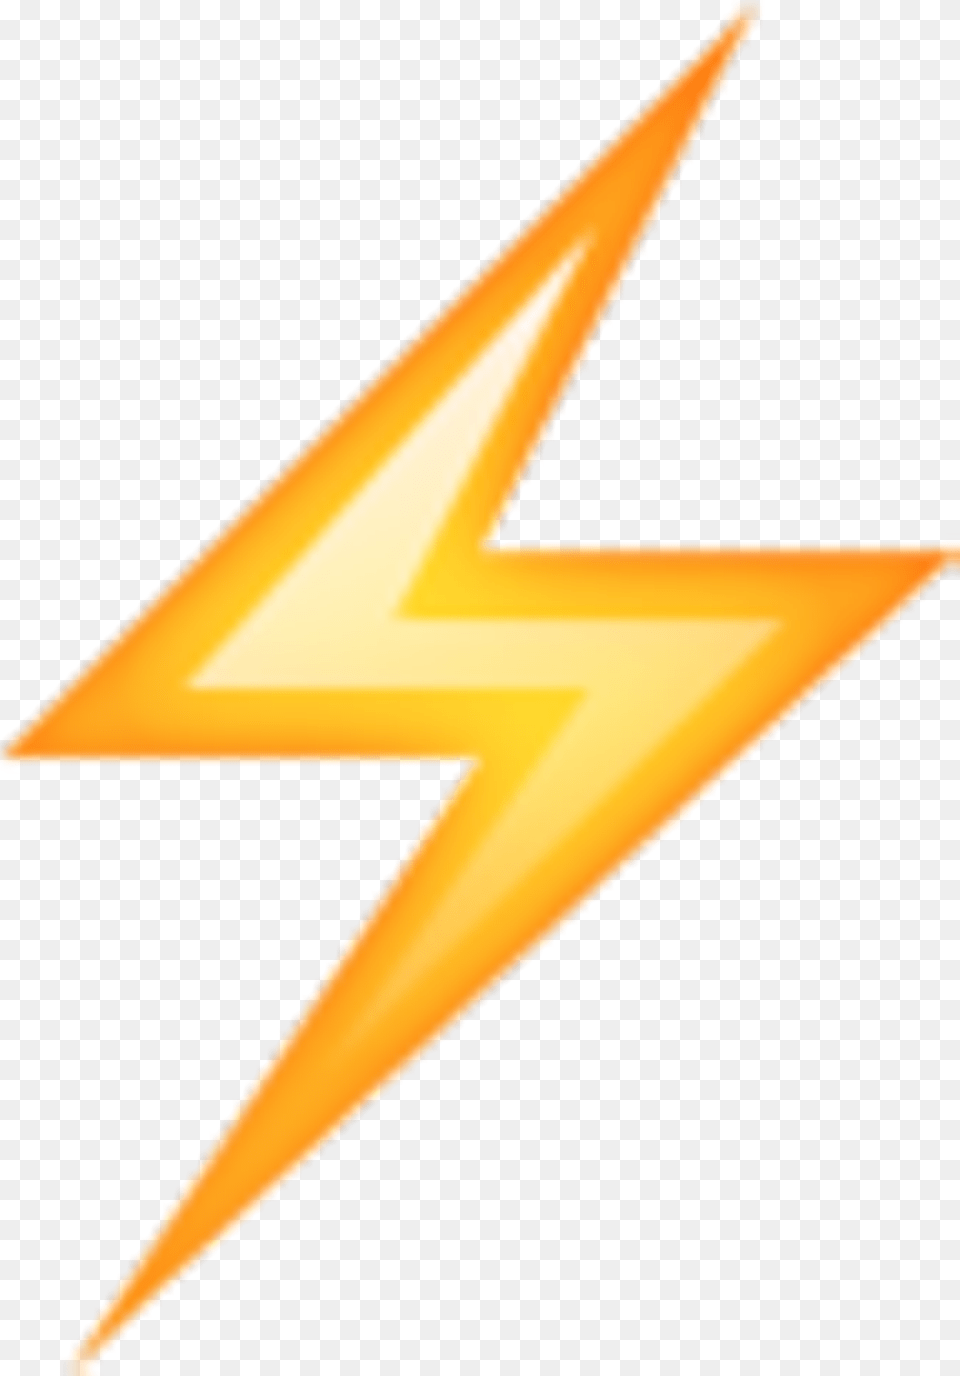 Rayito Rayo Ryan Thunder Emoji Whatsapp Tumblr Emoji Lightning, Star Symbol, Symbol, Lighting Free Png